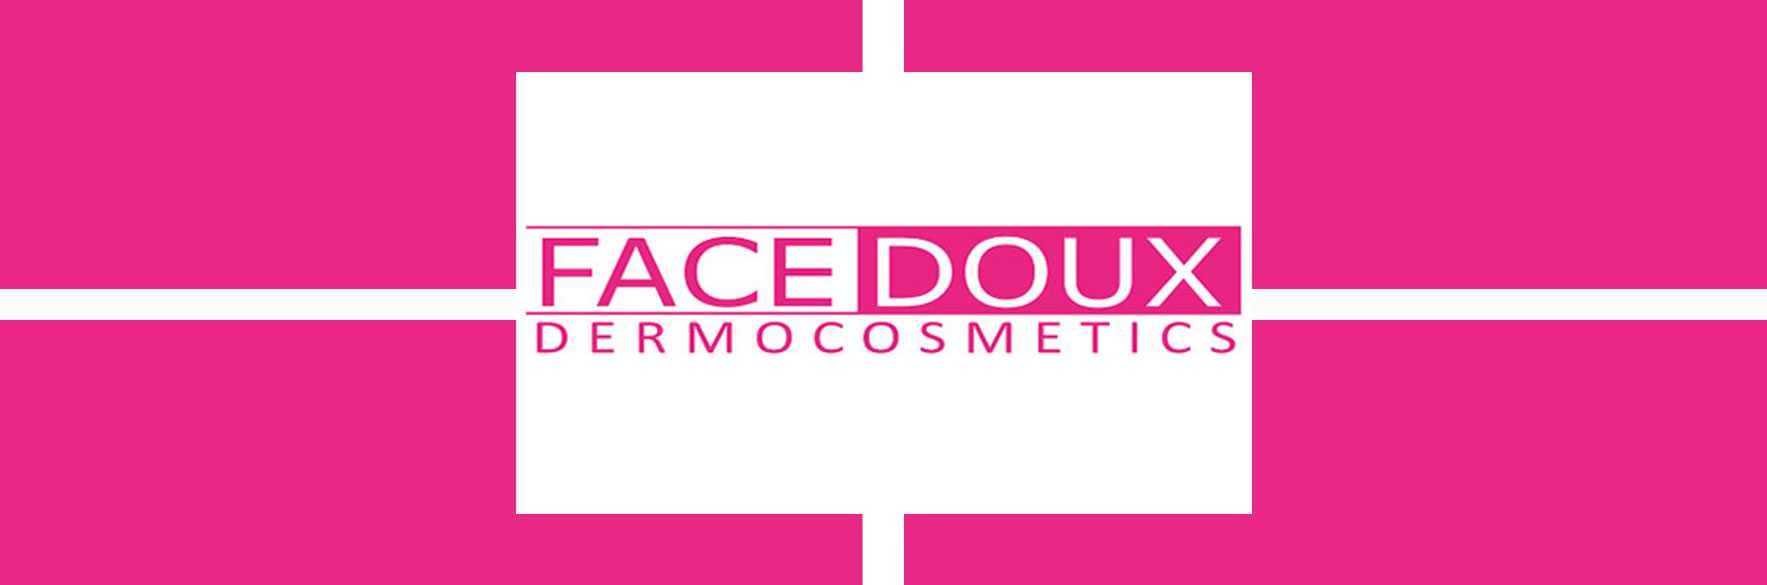 محصولات فیس دوکس FACE DOUX پوستی و بهداشتی